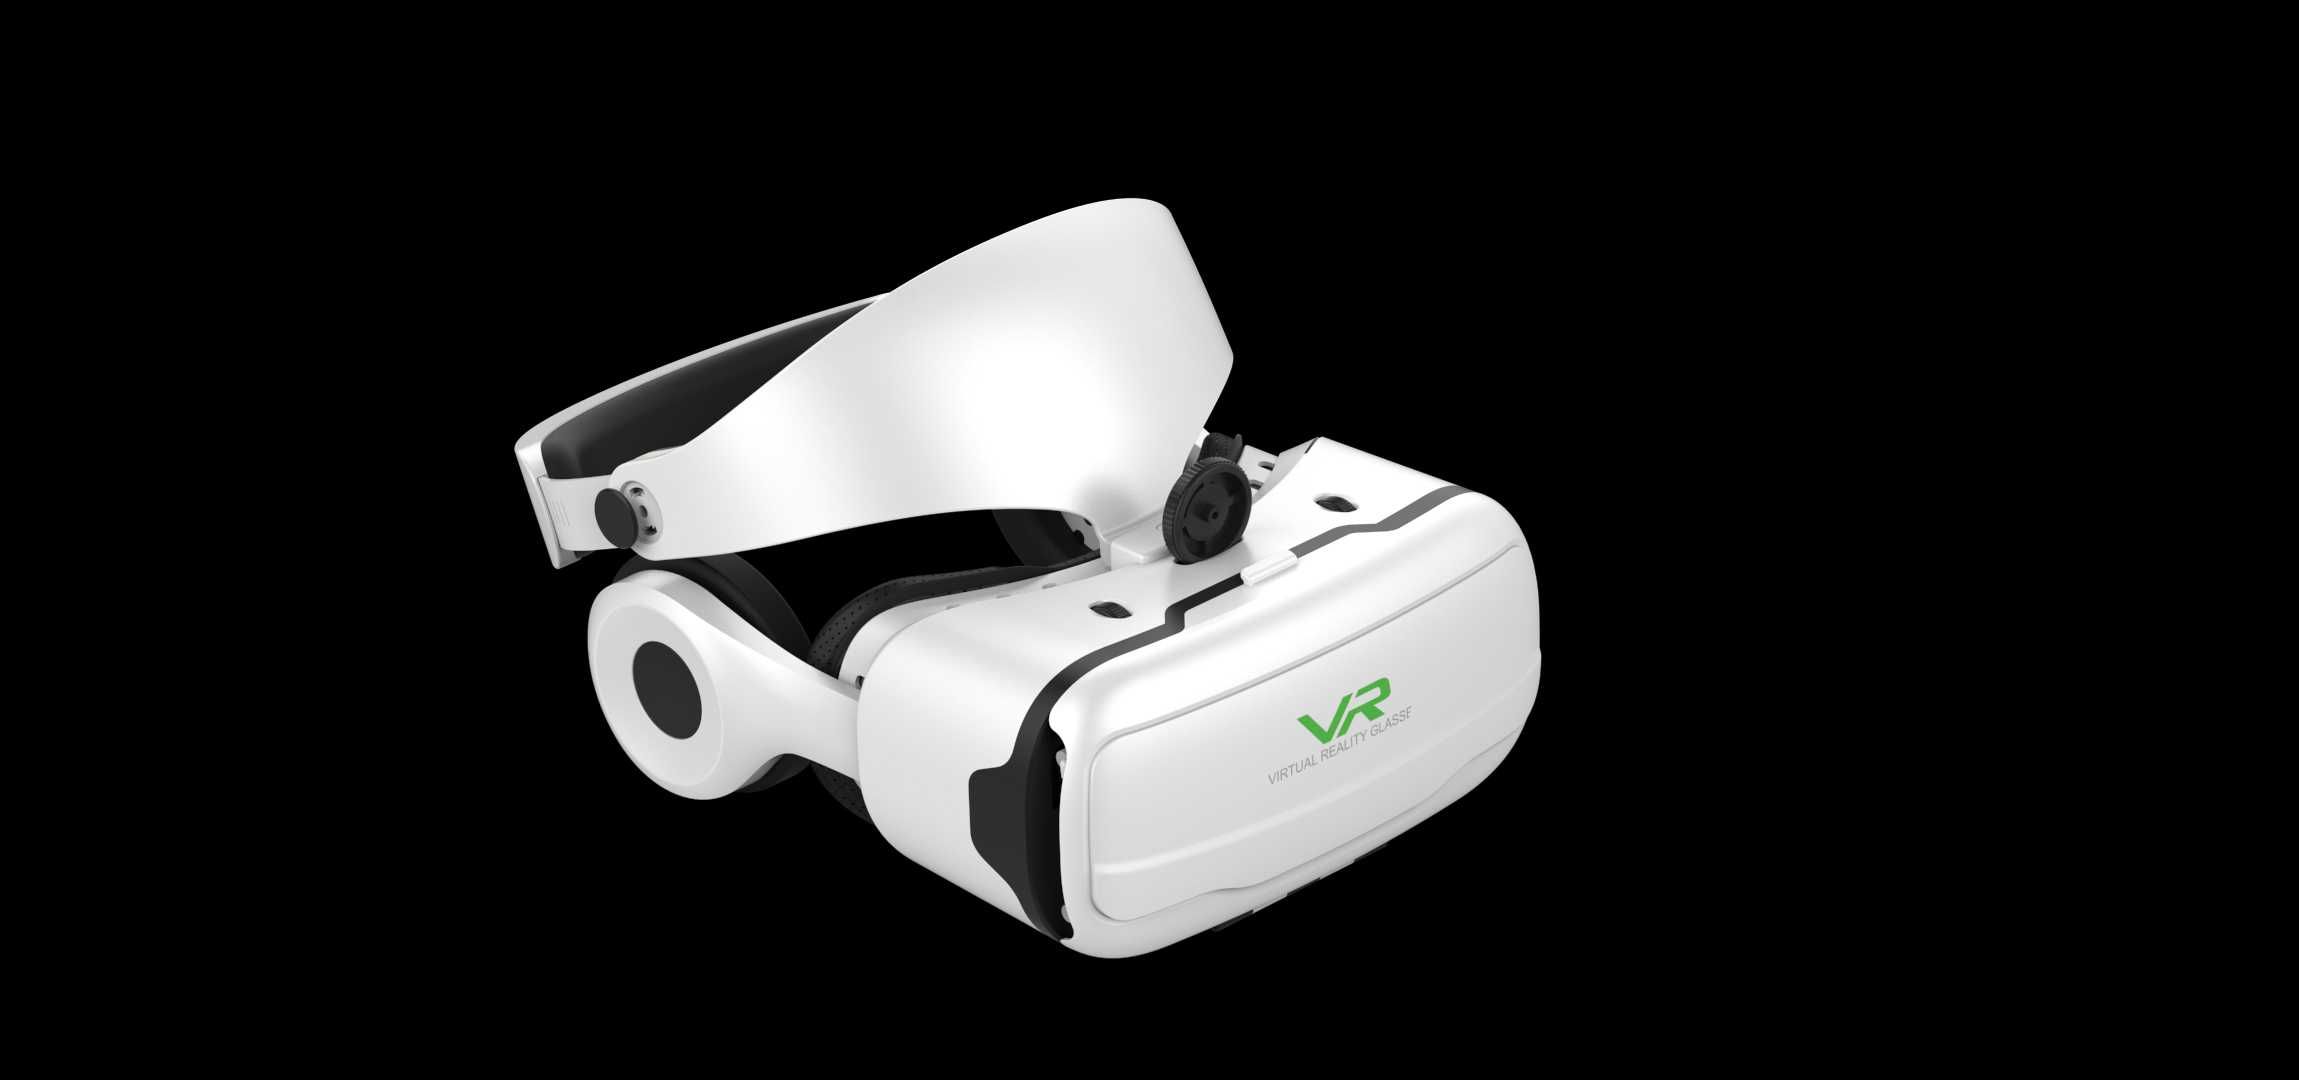 Очки виртуальной реальности 3D VR Shinecon G02EF +ДОСТАВКА!